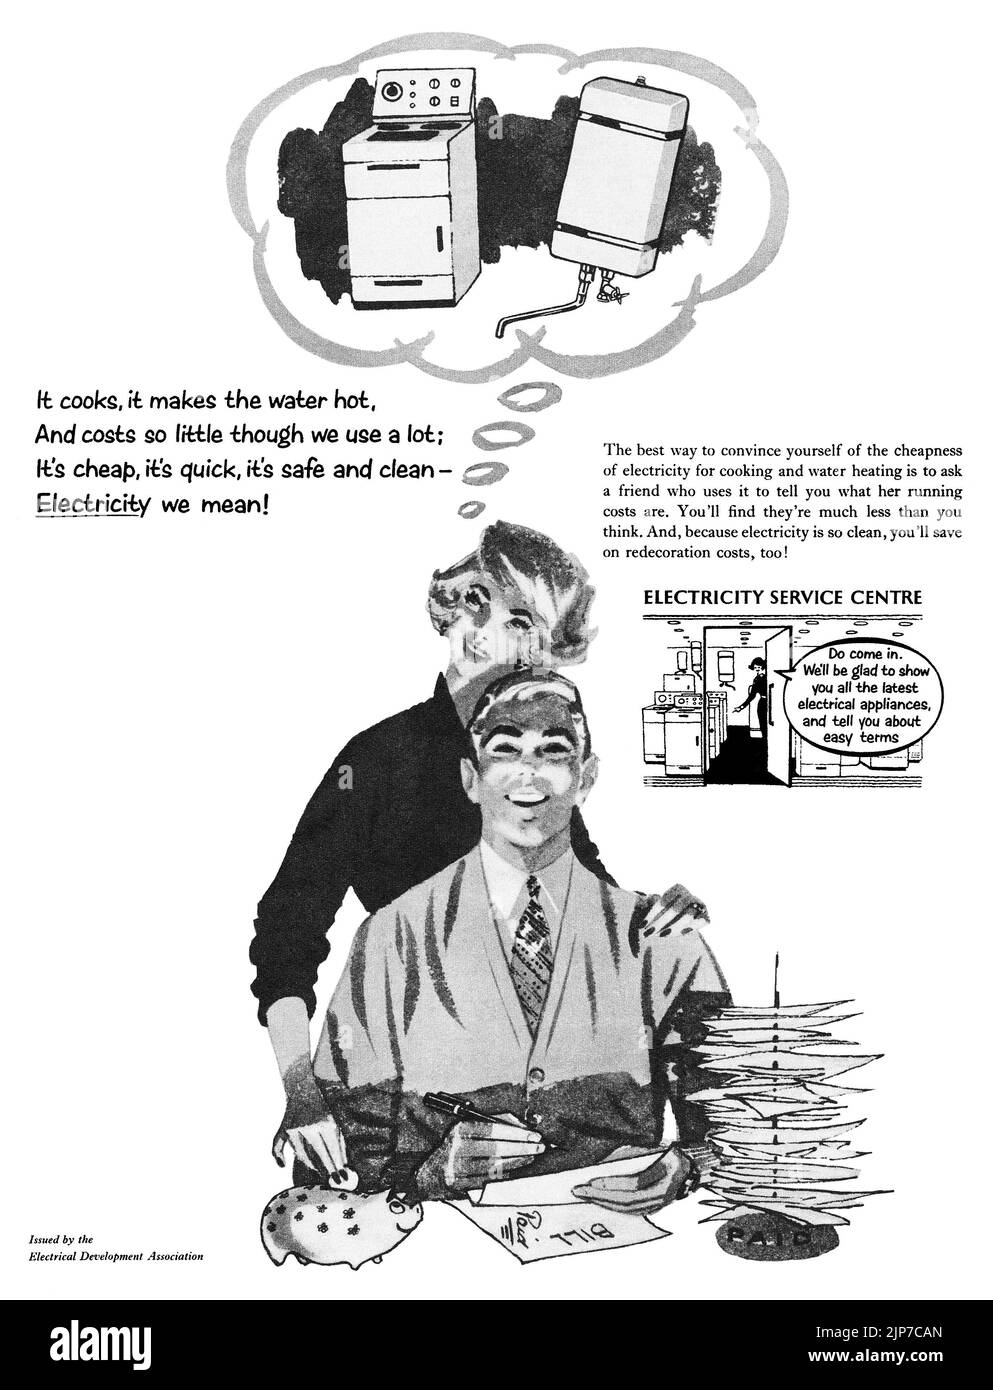 1950s Pubblicità britannica della Electrical Development Association che promuove il disordine dell'elettricità in casa. Foto Stock